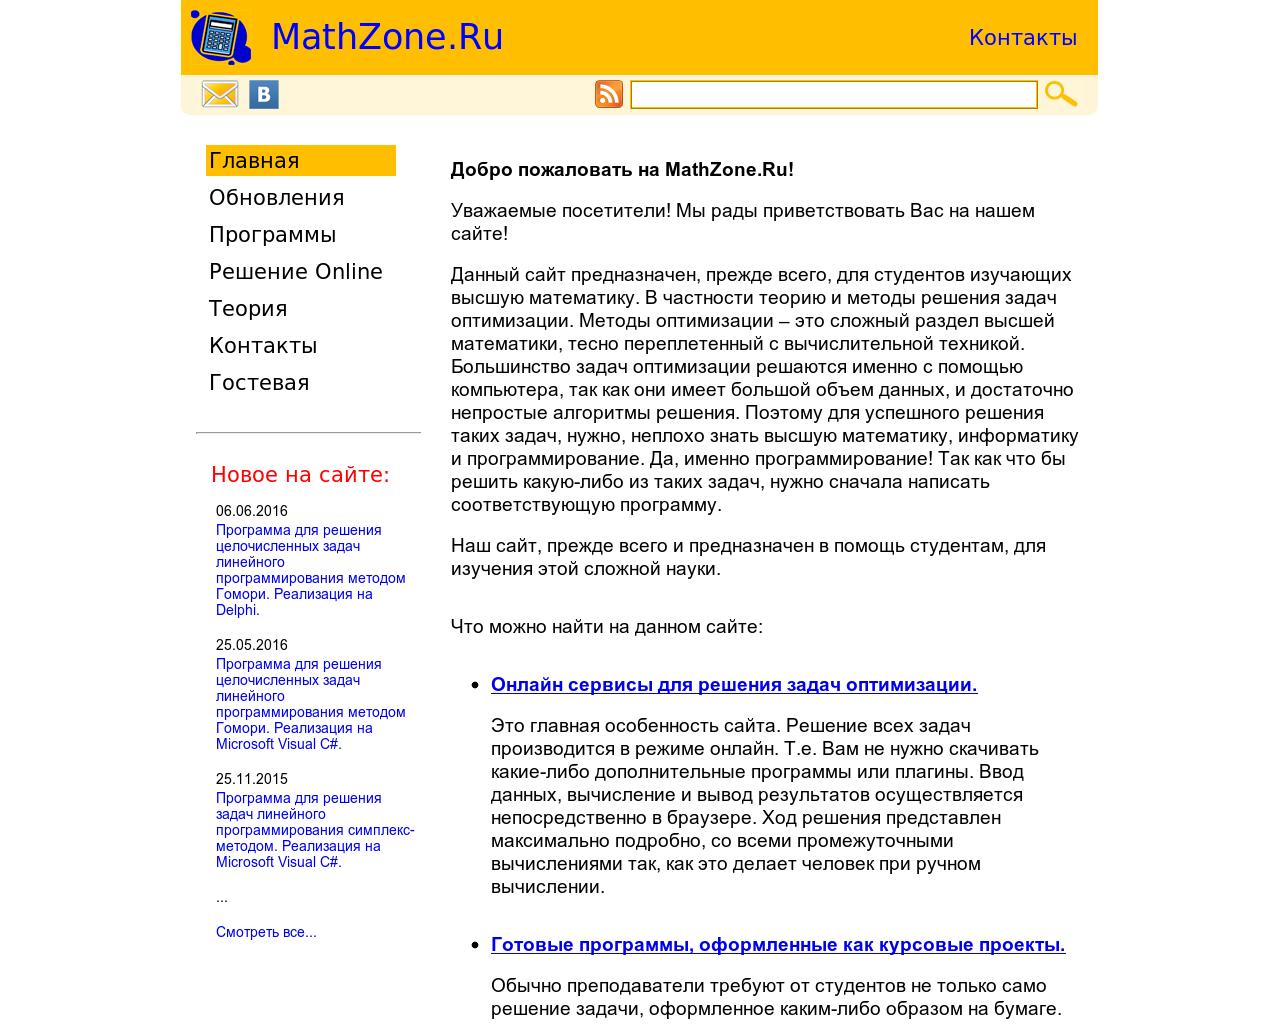 Изображение сайта mathzone.ru в разрешении 1280x1024